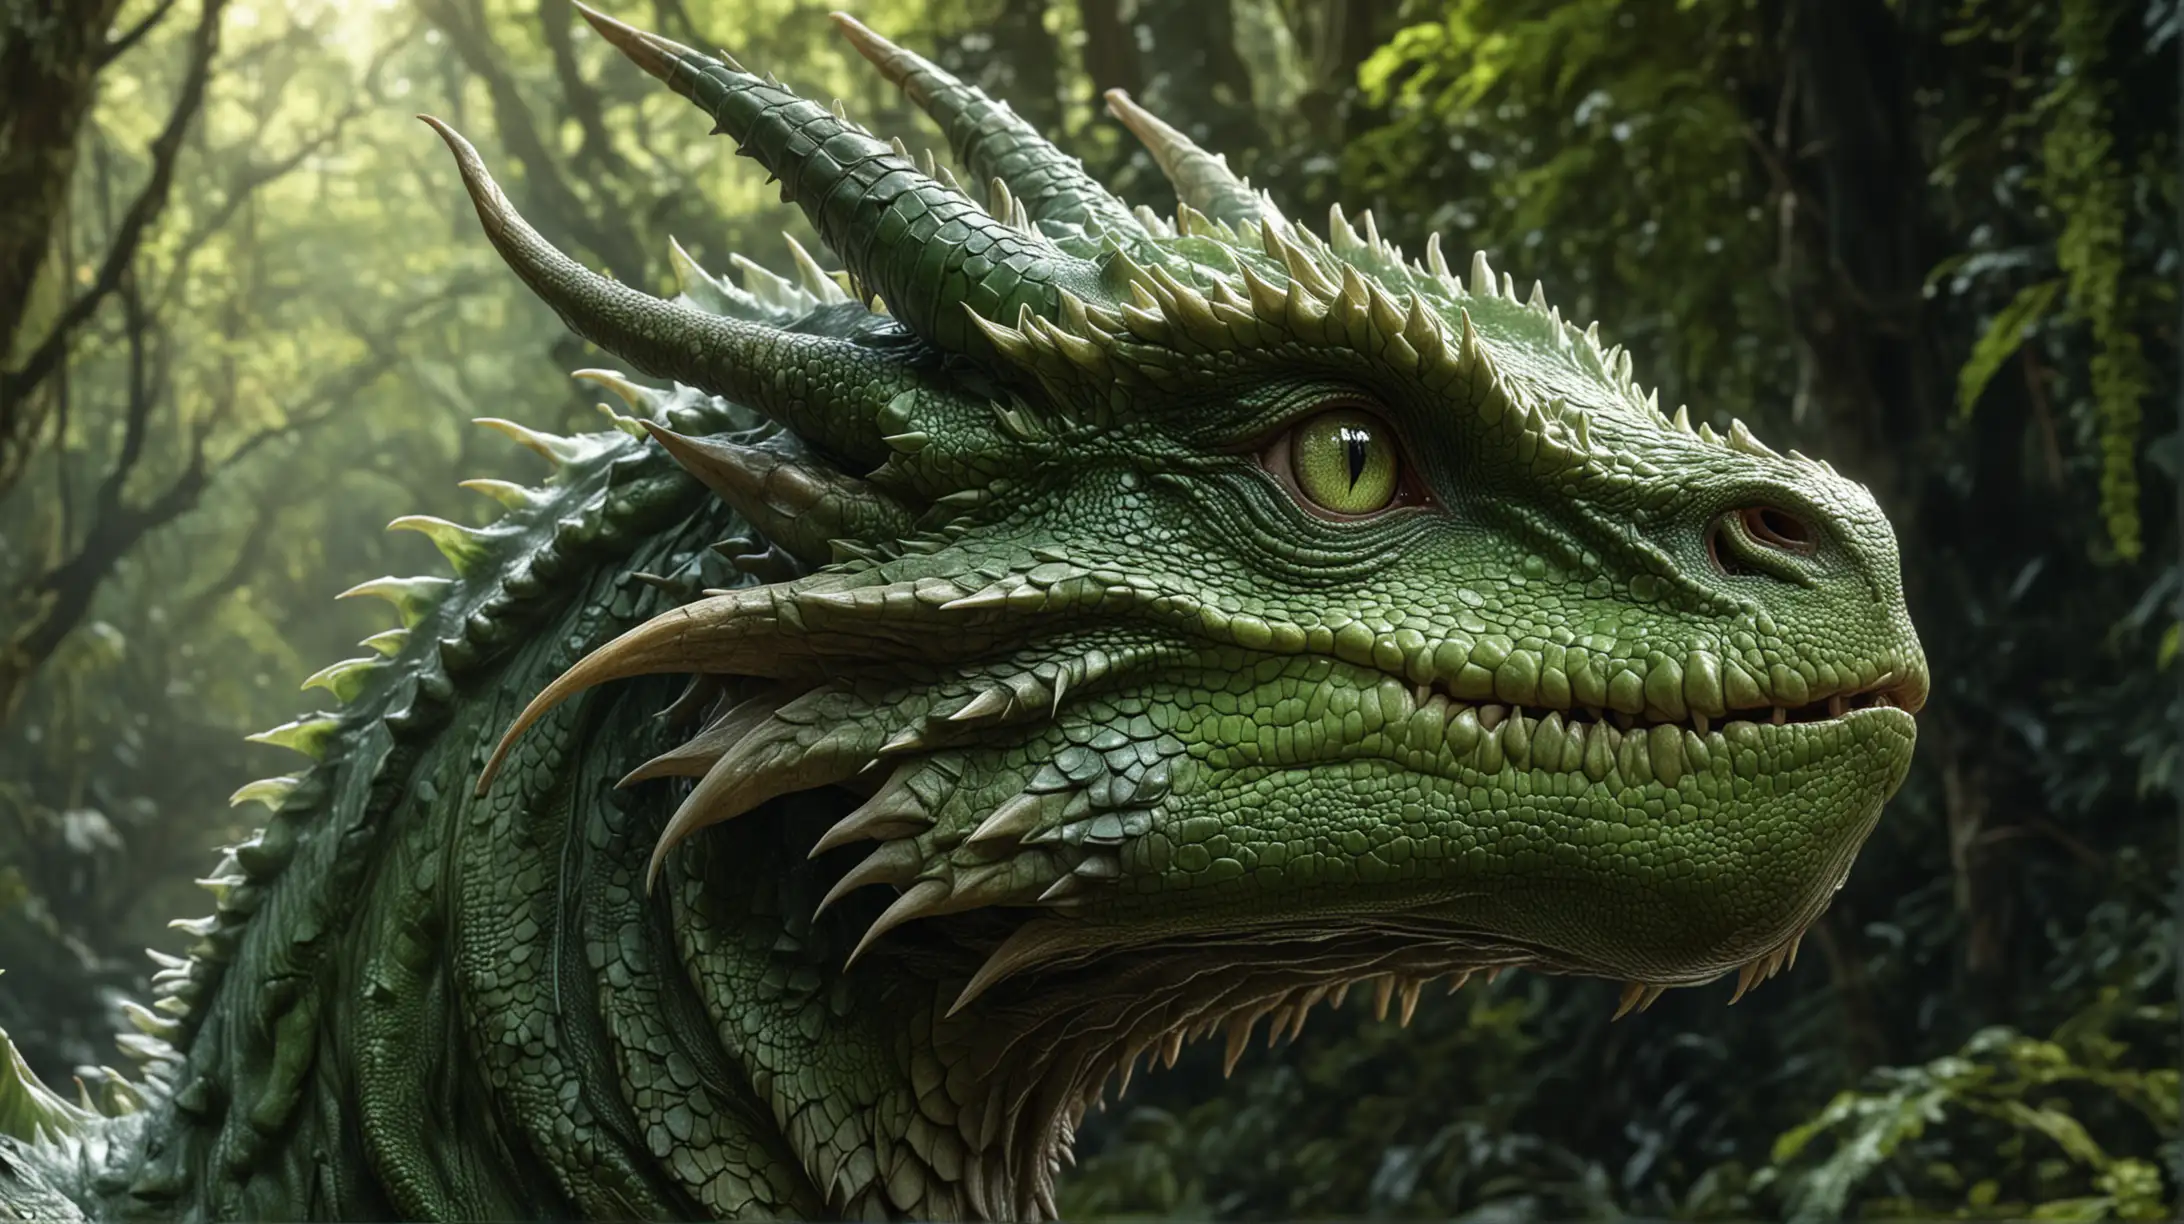 Portrait d'un grand dragon vert, majestueux, massif, captivant, les yeux verts, hyperréaliste de haute qualité, 8K Ultra HD, Le dragon est représenté dans une forêt amazonienne, ses traits baignant dans une lumière douce et diffuse qui accentue les nuances délicates de son expression. L'artiste, s'inspirant de la précision de de Sargent.